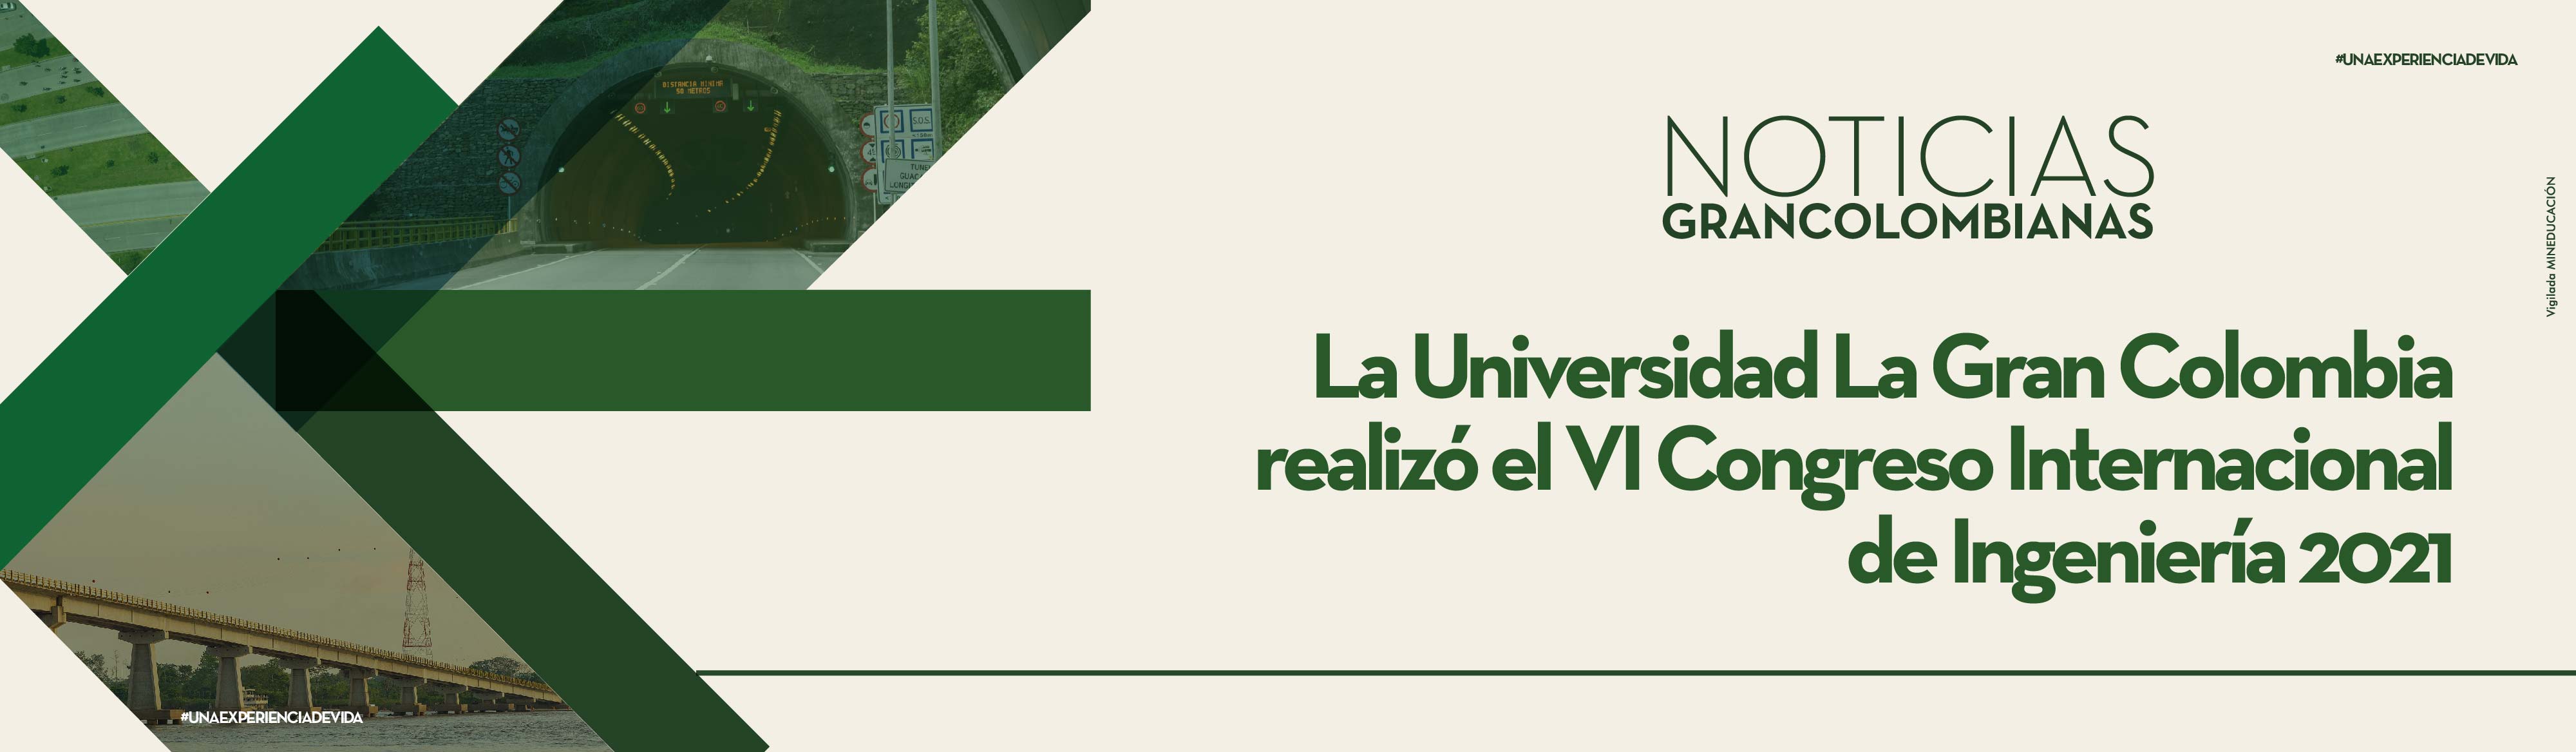 La Universidad La Gran Colombia realizó el VI Congreso Internacional de  Ingeniería 2021